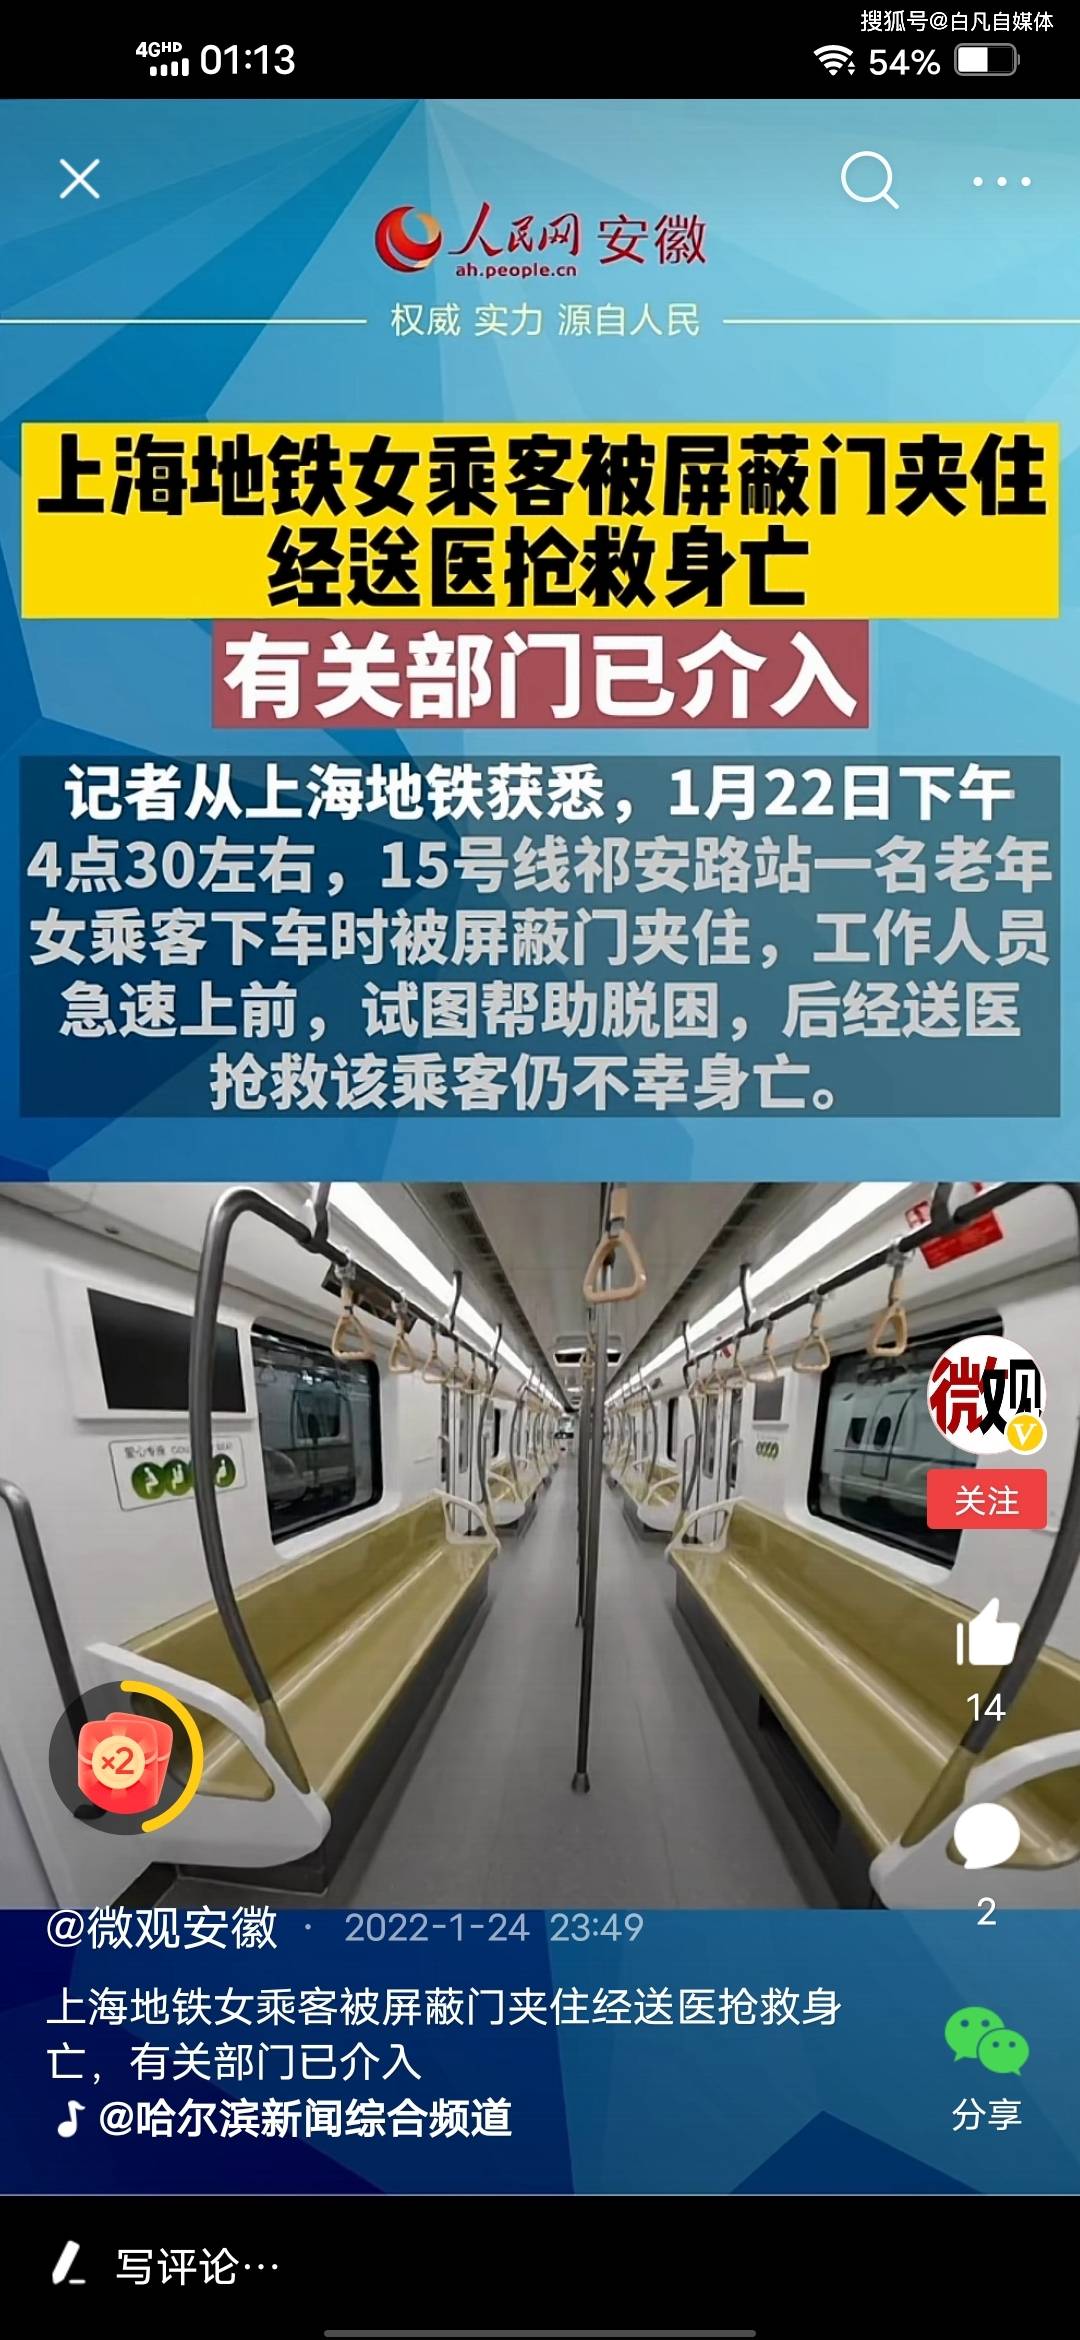 上海地铁女乘客被屏蔽门夹住身亡_上海地铁回应女乘客被夹身亡_老人